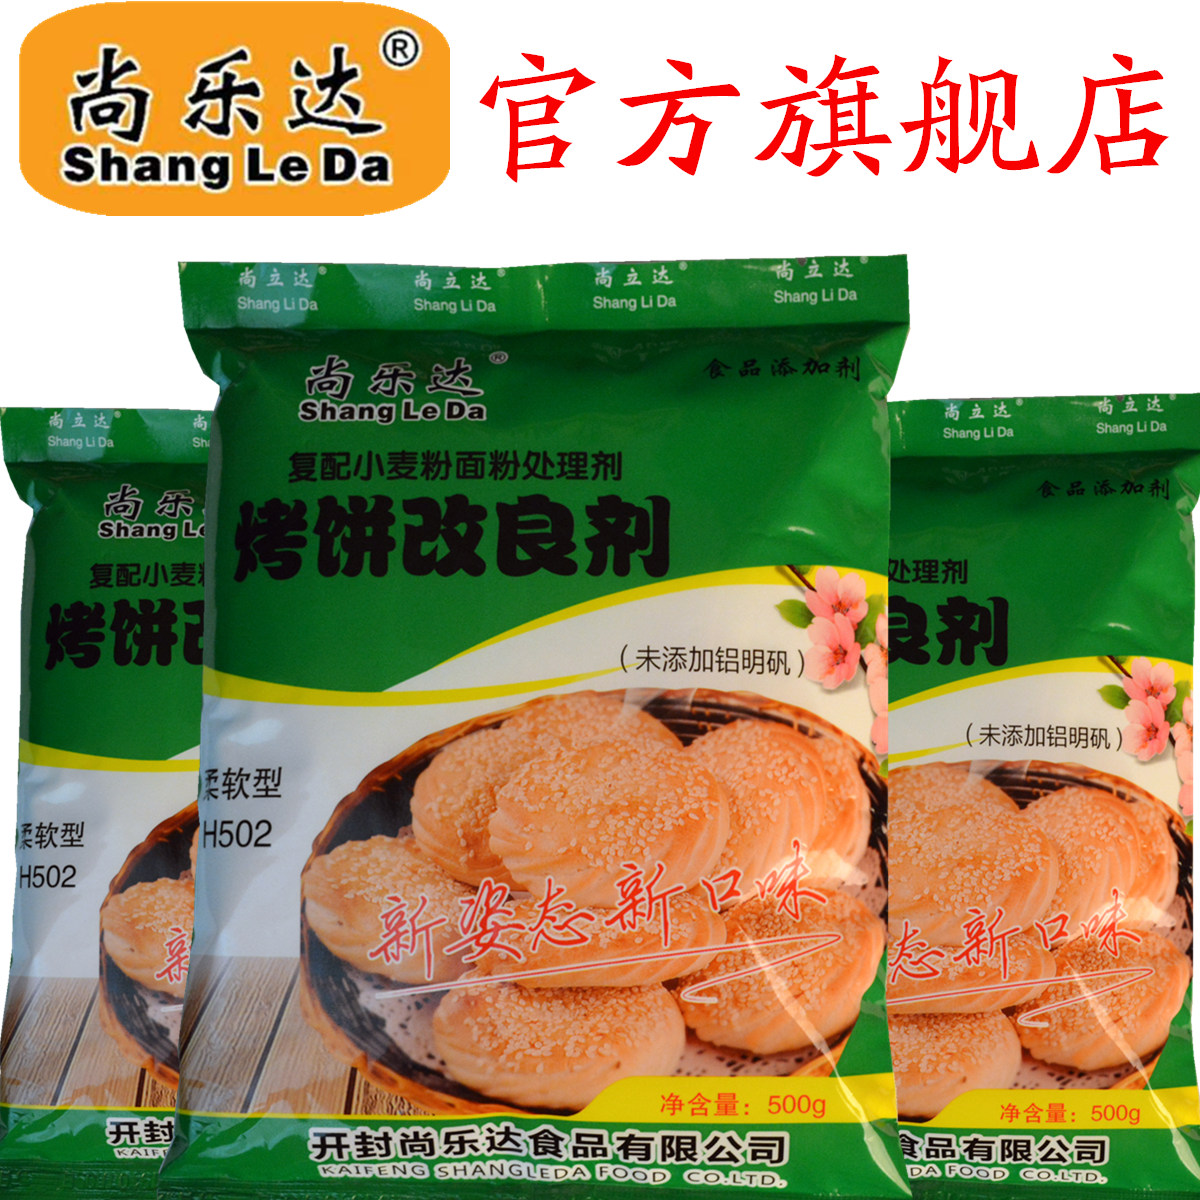 葱花饼 潮牌 尚乐达 烧饼 柔软型 烤饼改良剂 H502 烧饼改良剂